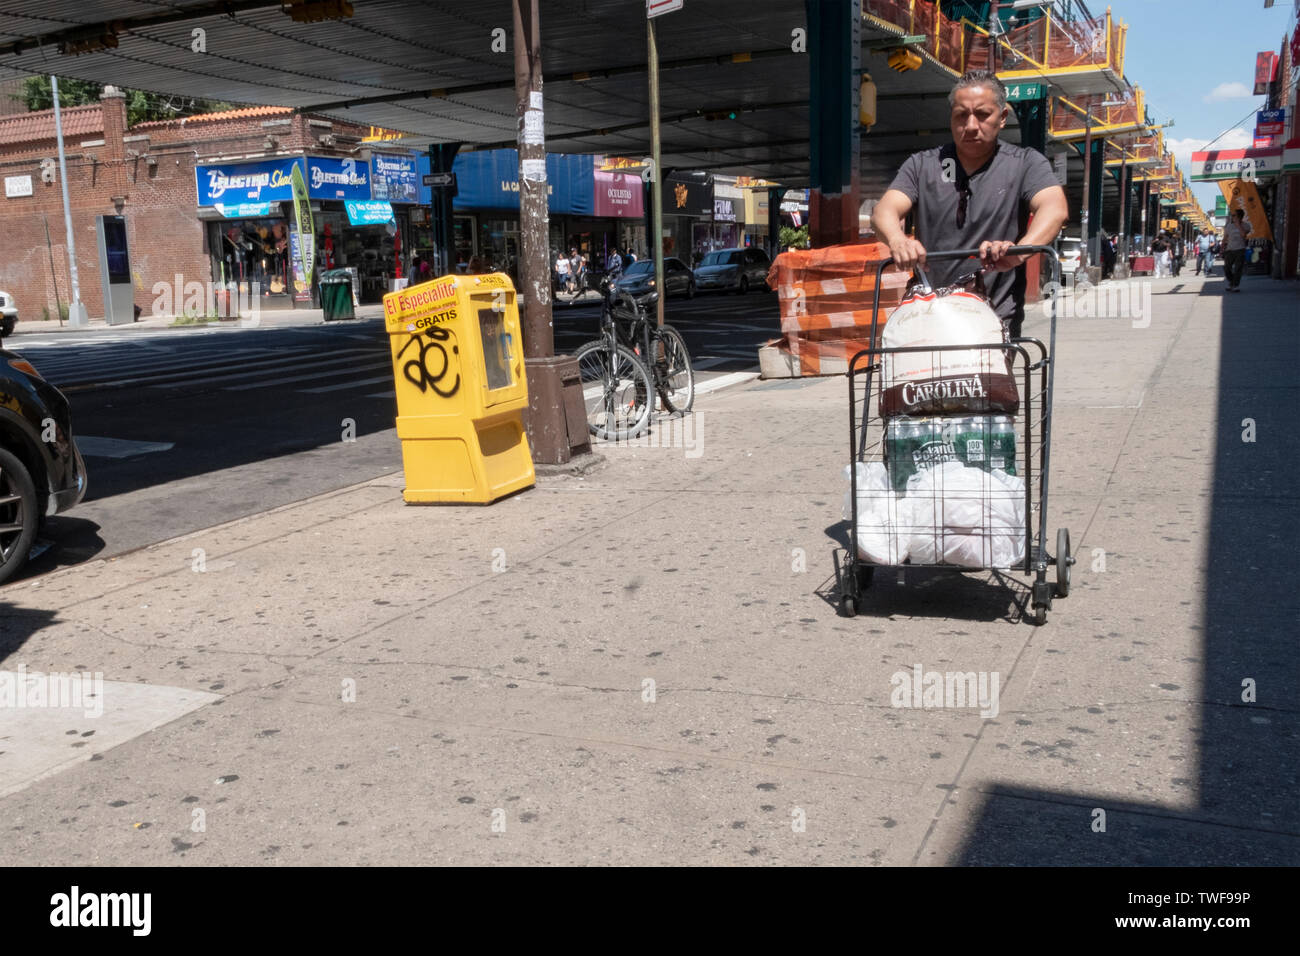 Un homme, probablement d'Amérique latine, pousse un panier avec des provisions et de l'eau sous l'el à Roosevelt Ave & 84th Street à Jackson Heights, Queens, NYC Banque D'Images